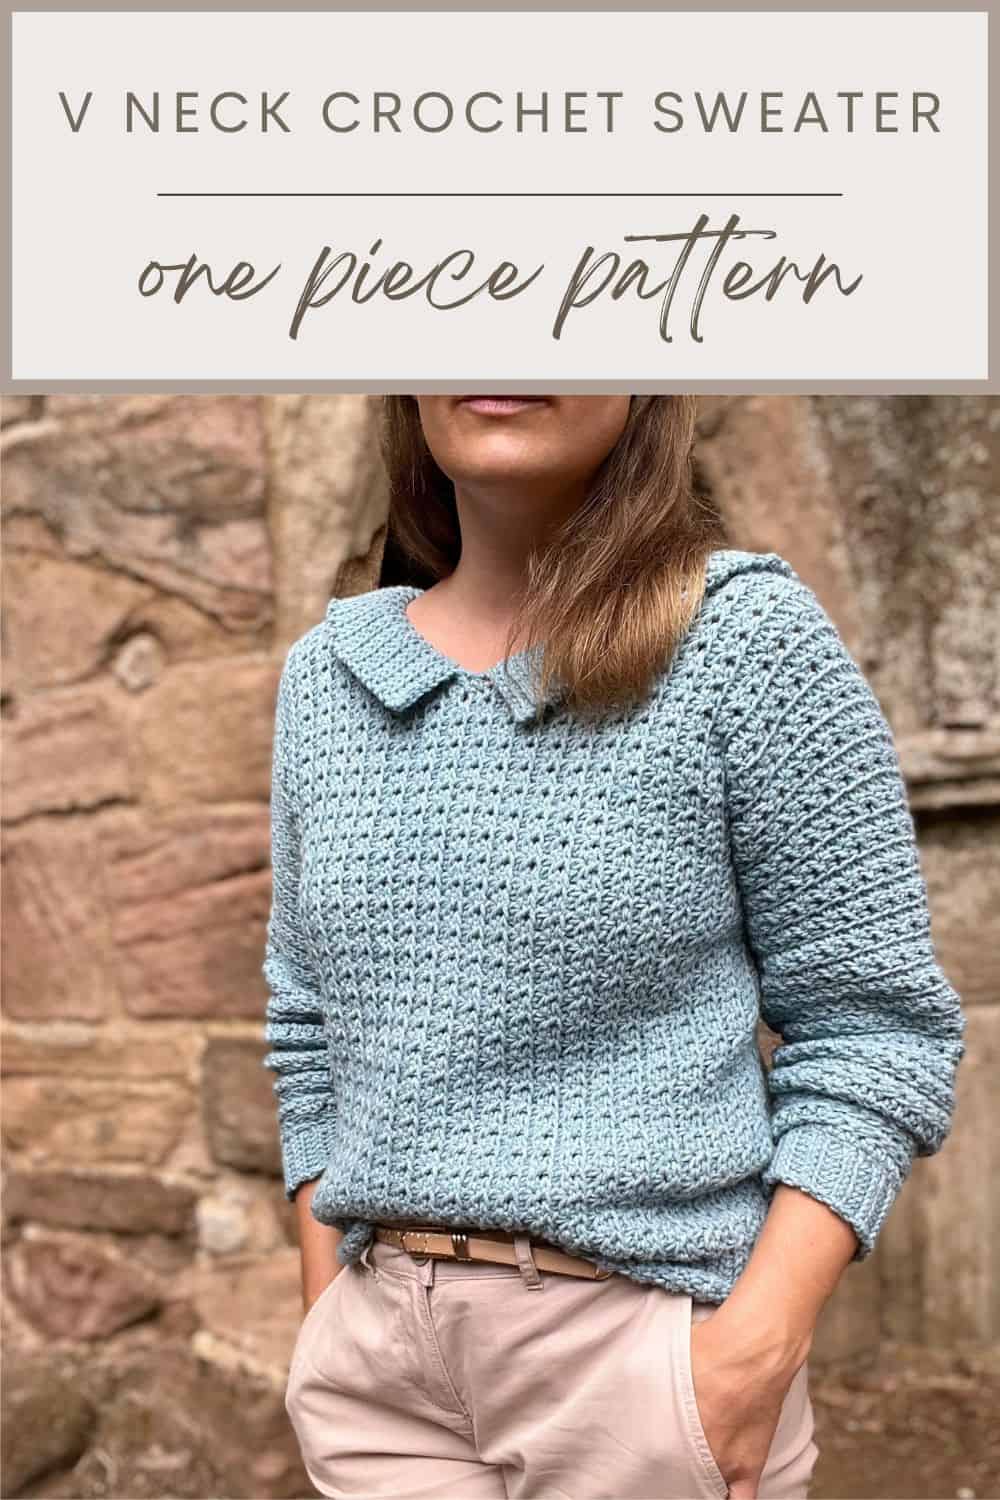 Side to side crochet sweater pattern in blue.